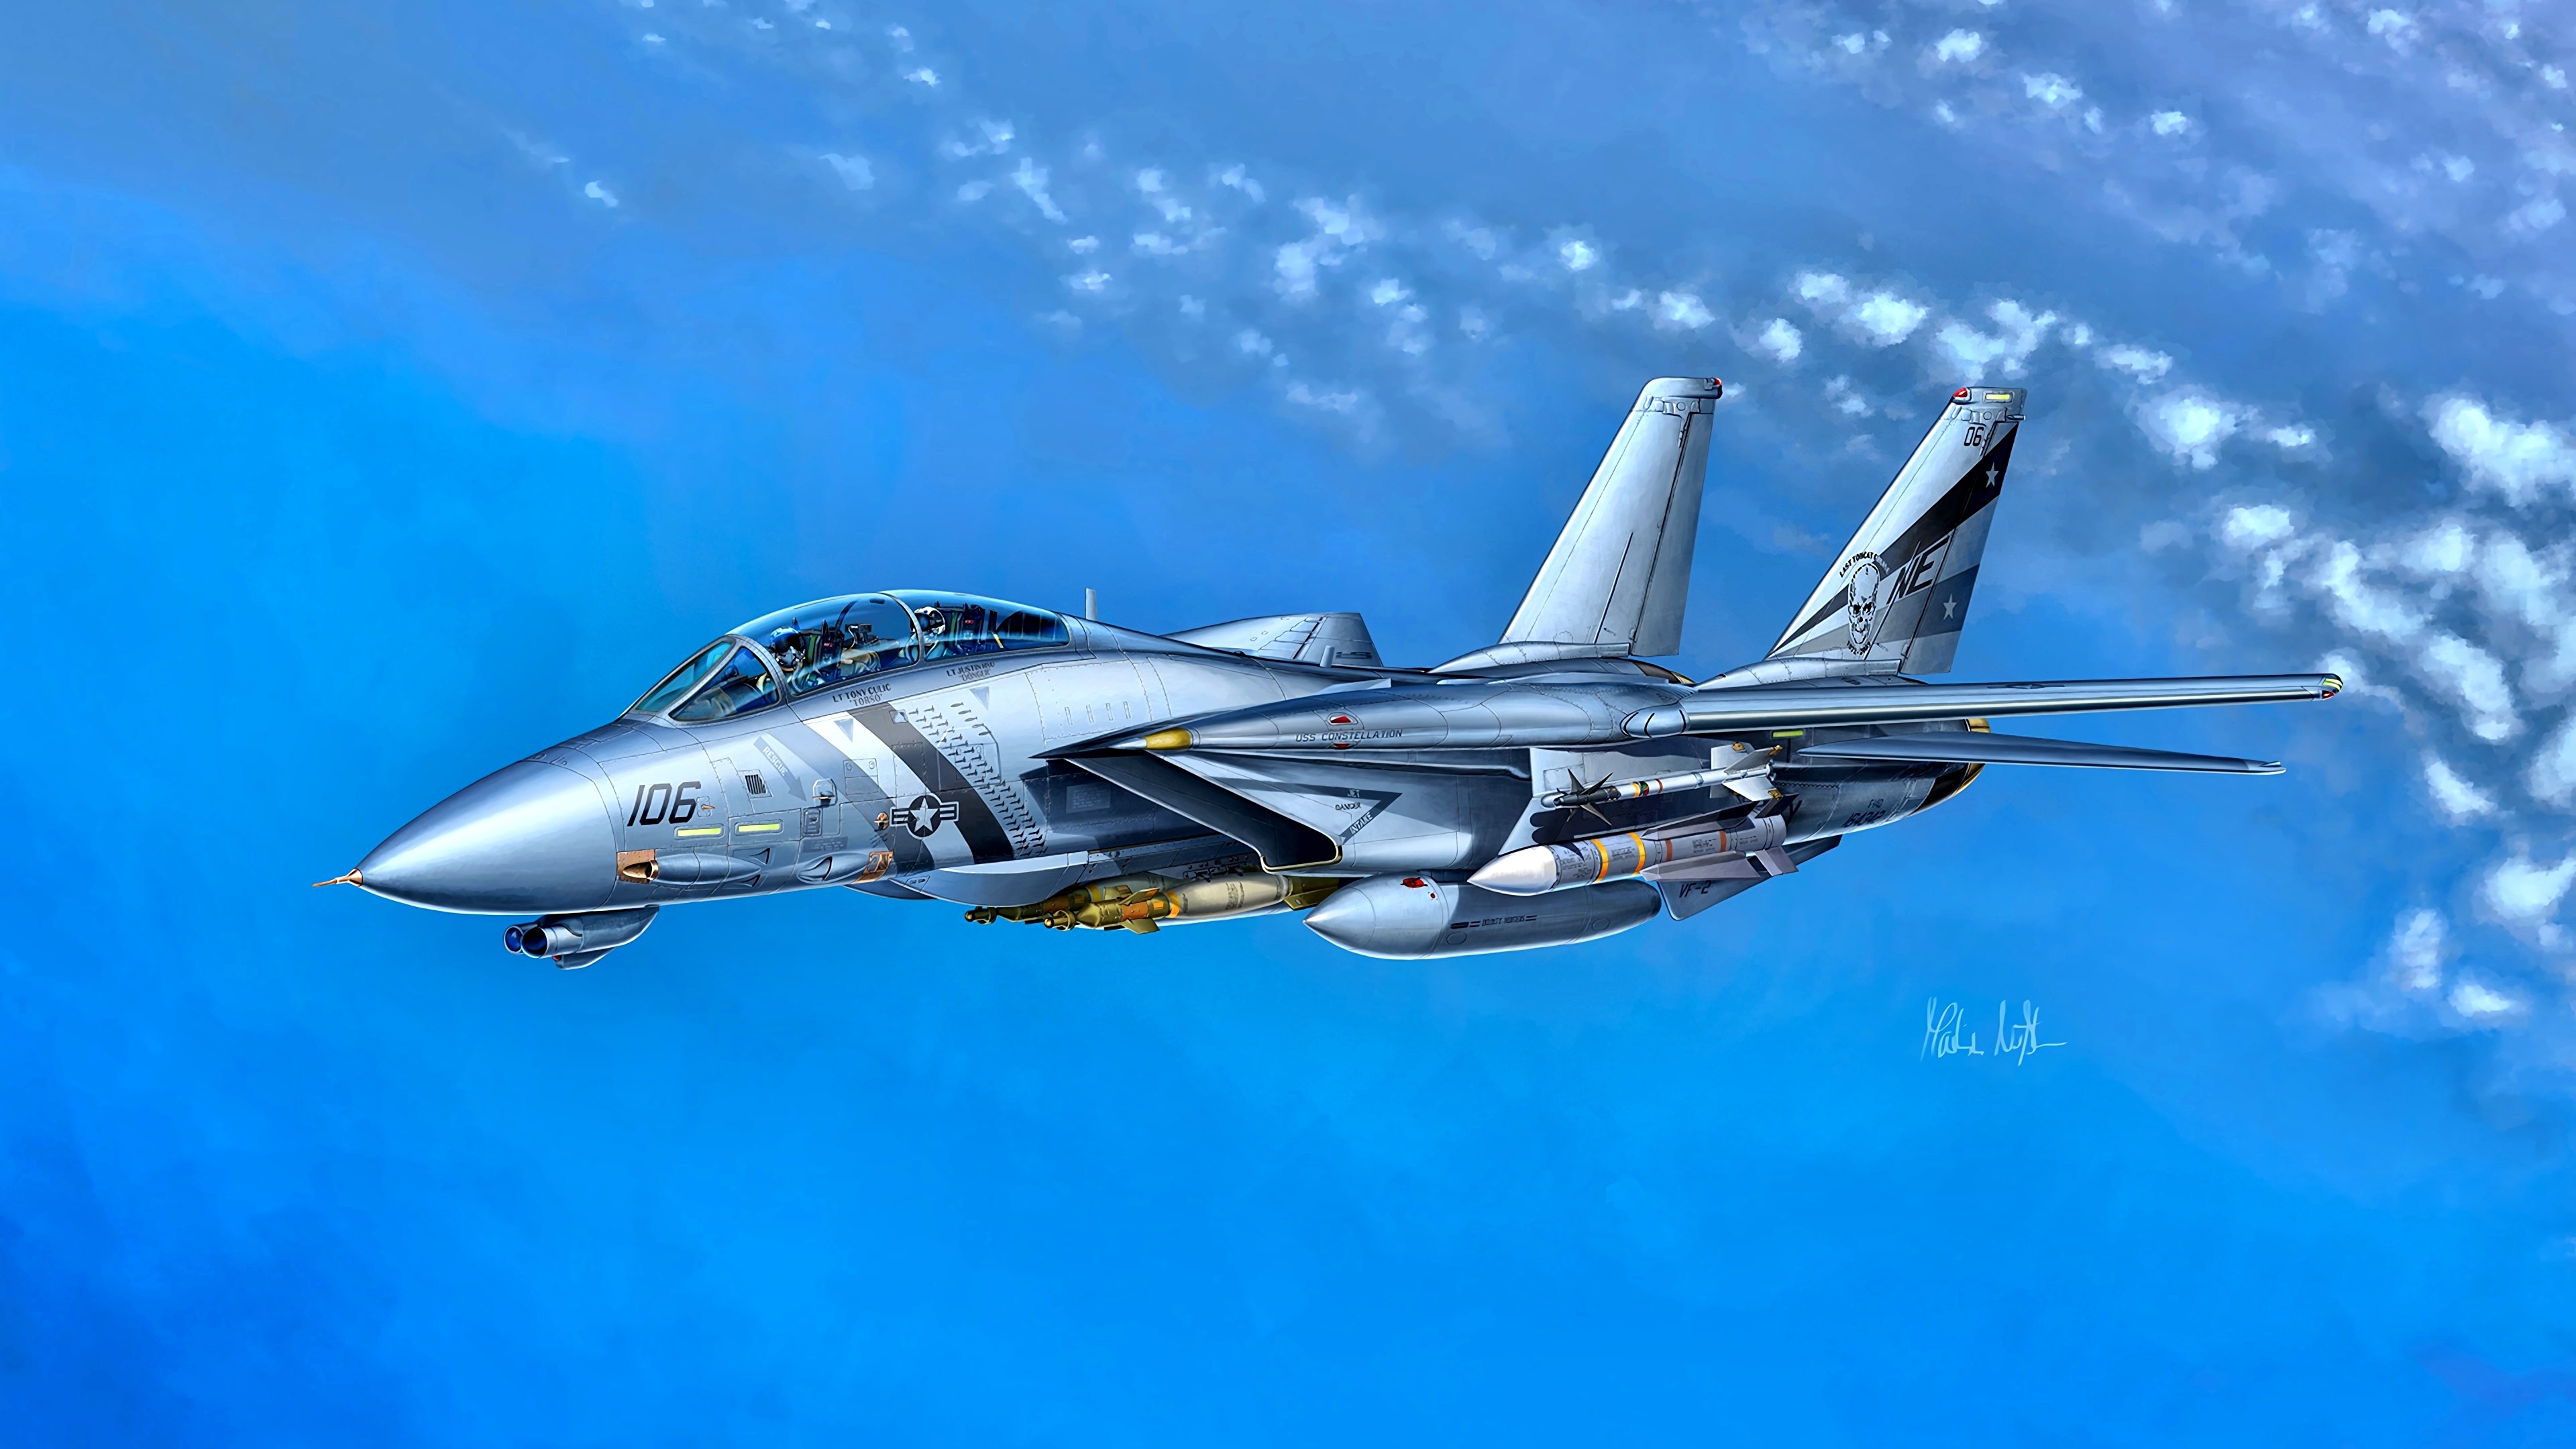 壁紙 3840x2160 描かれた壁紙 戦闘機 飛行機 Grumman F 14d Super Tomcat Vf 2 アメリカ の 航空 ダウンロード 写真